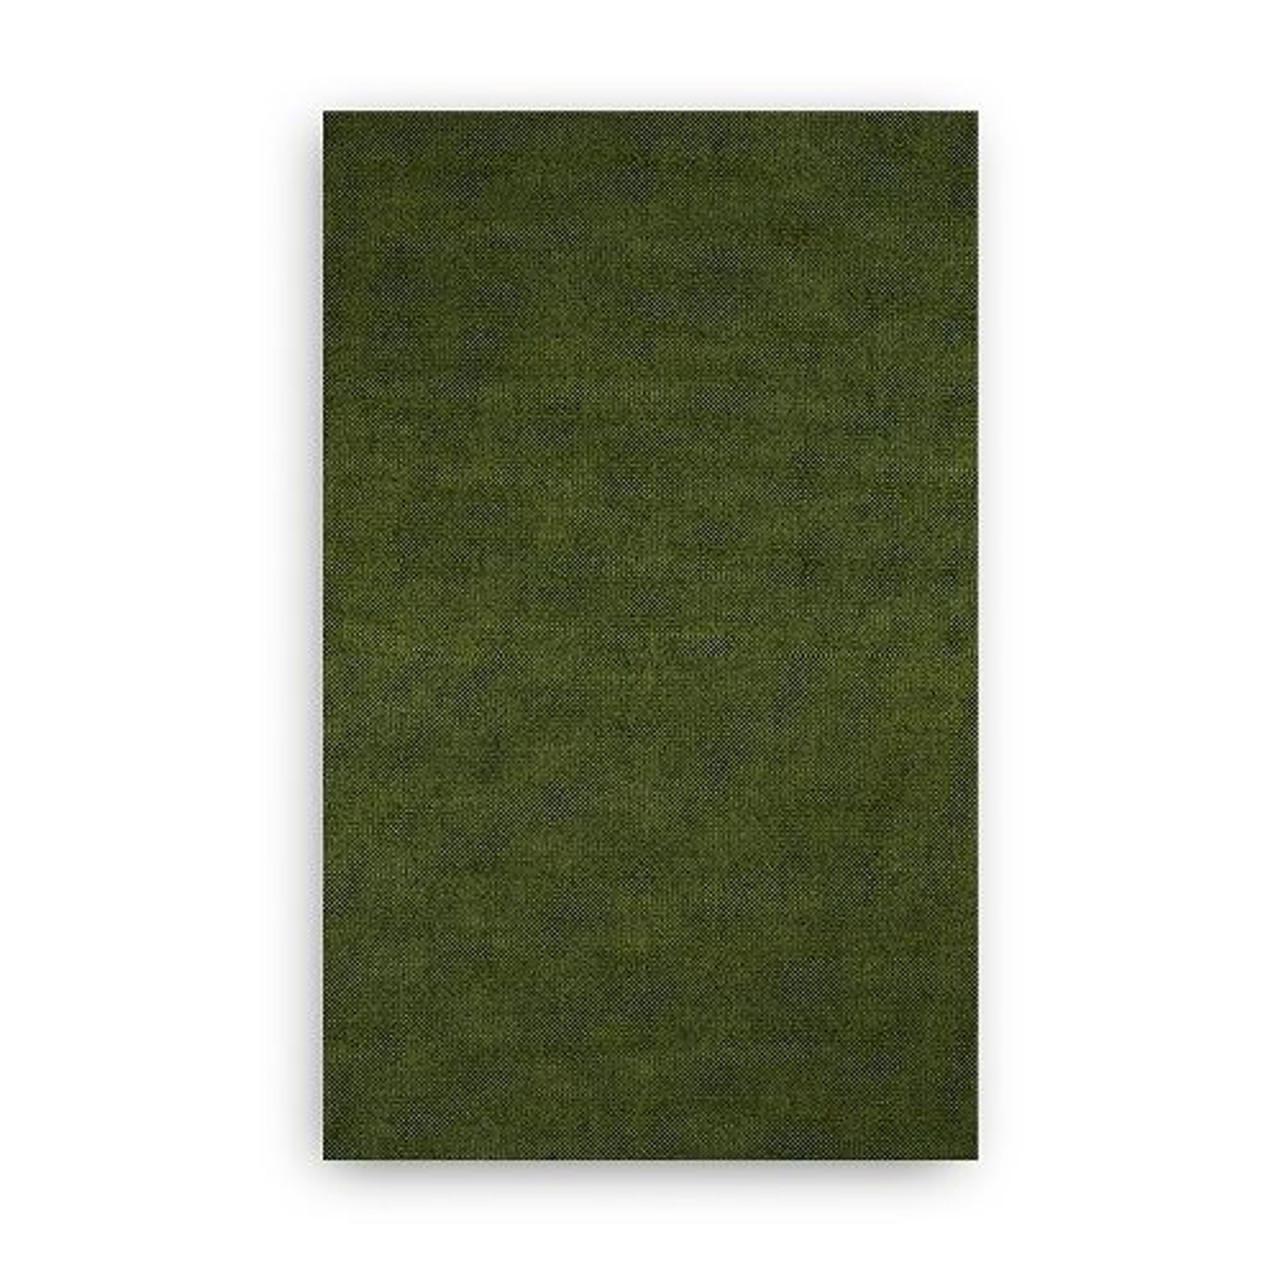 Aalto D3 - cover - Gabriel Capture 05301 dark green